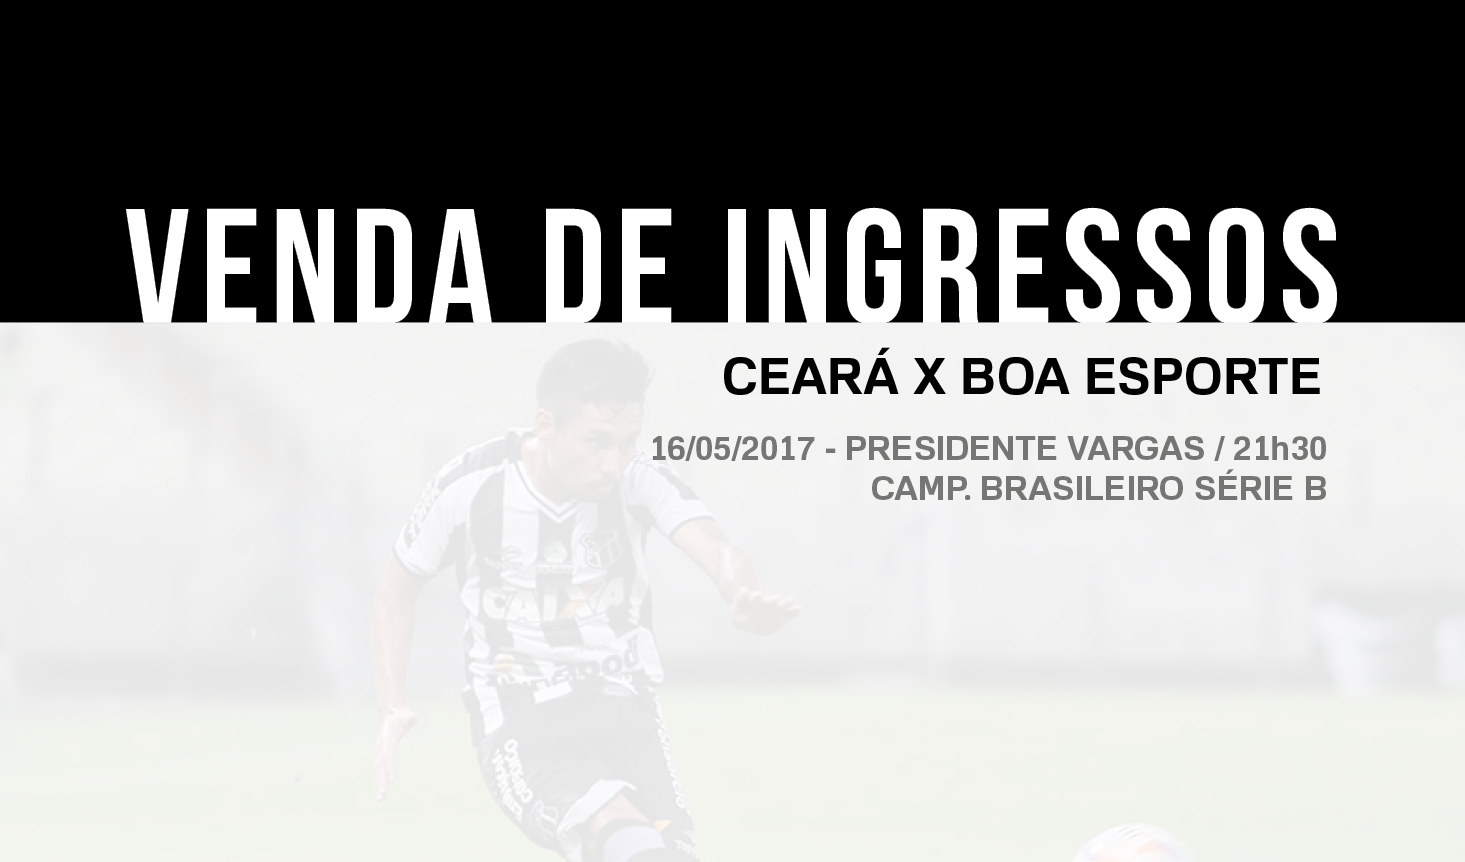 Confira os detalhes da venda de ingressos para Ceará e Boa Esporte